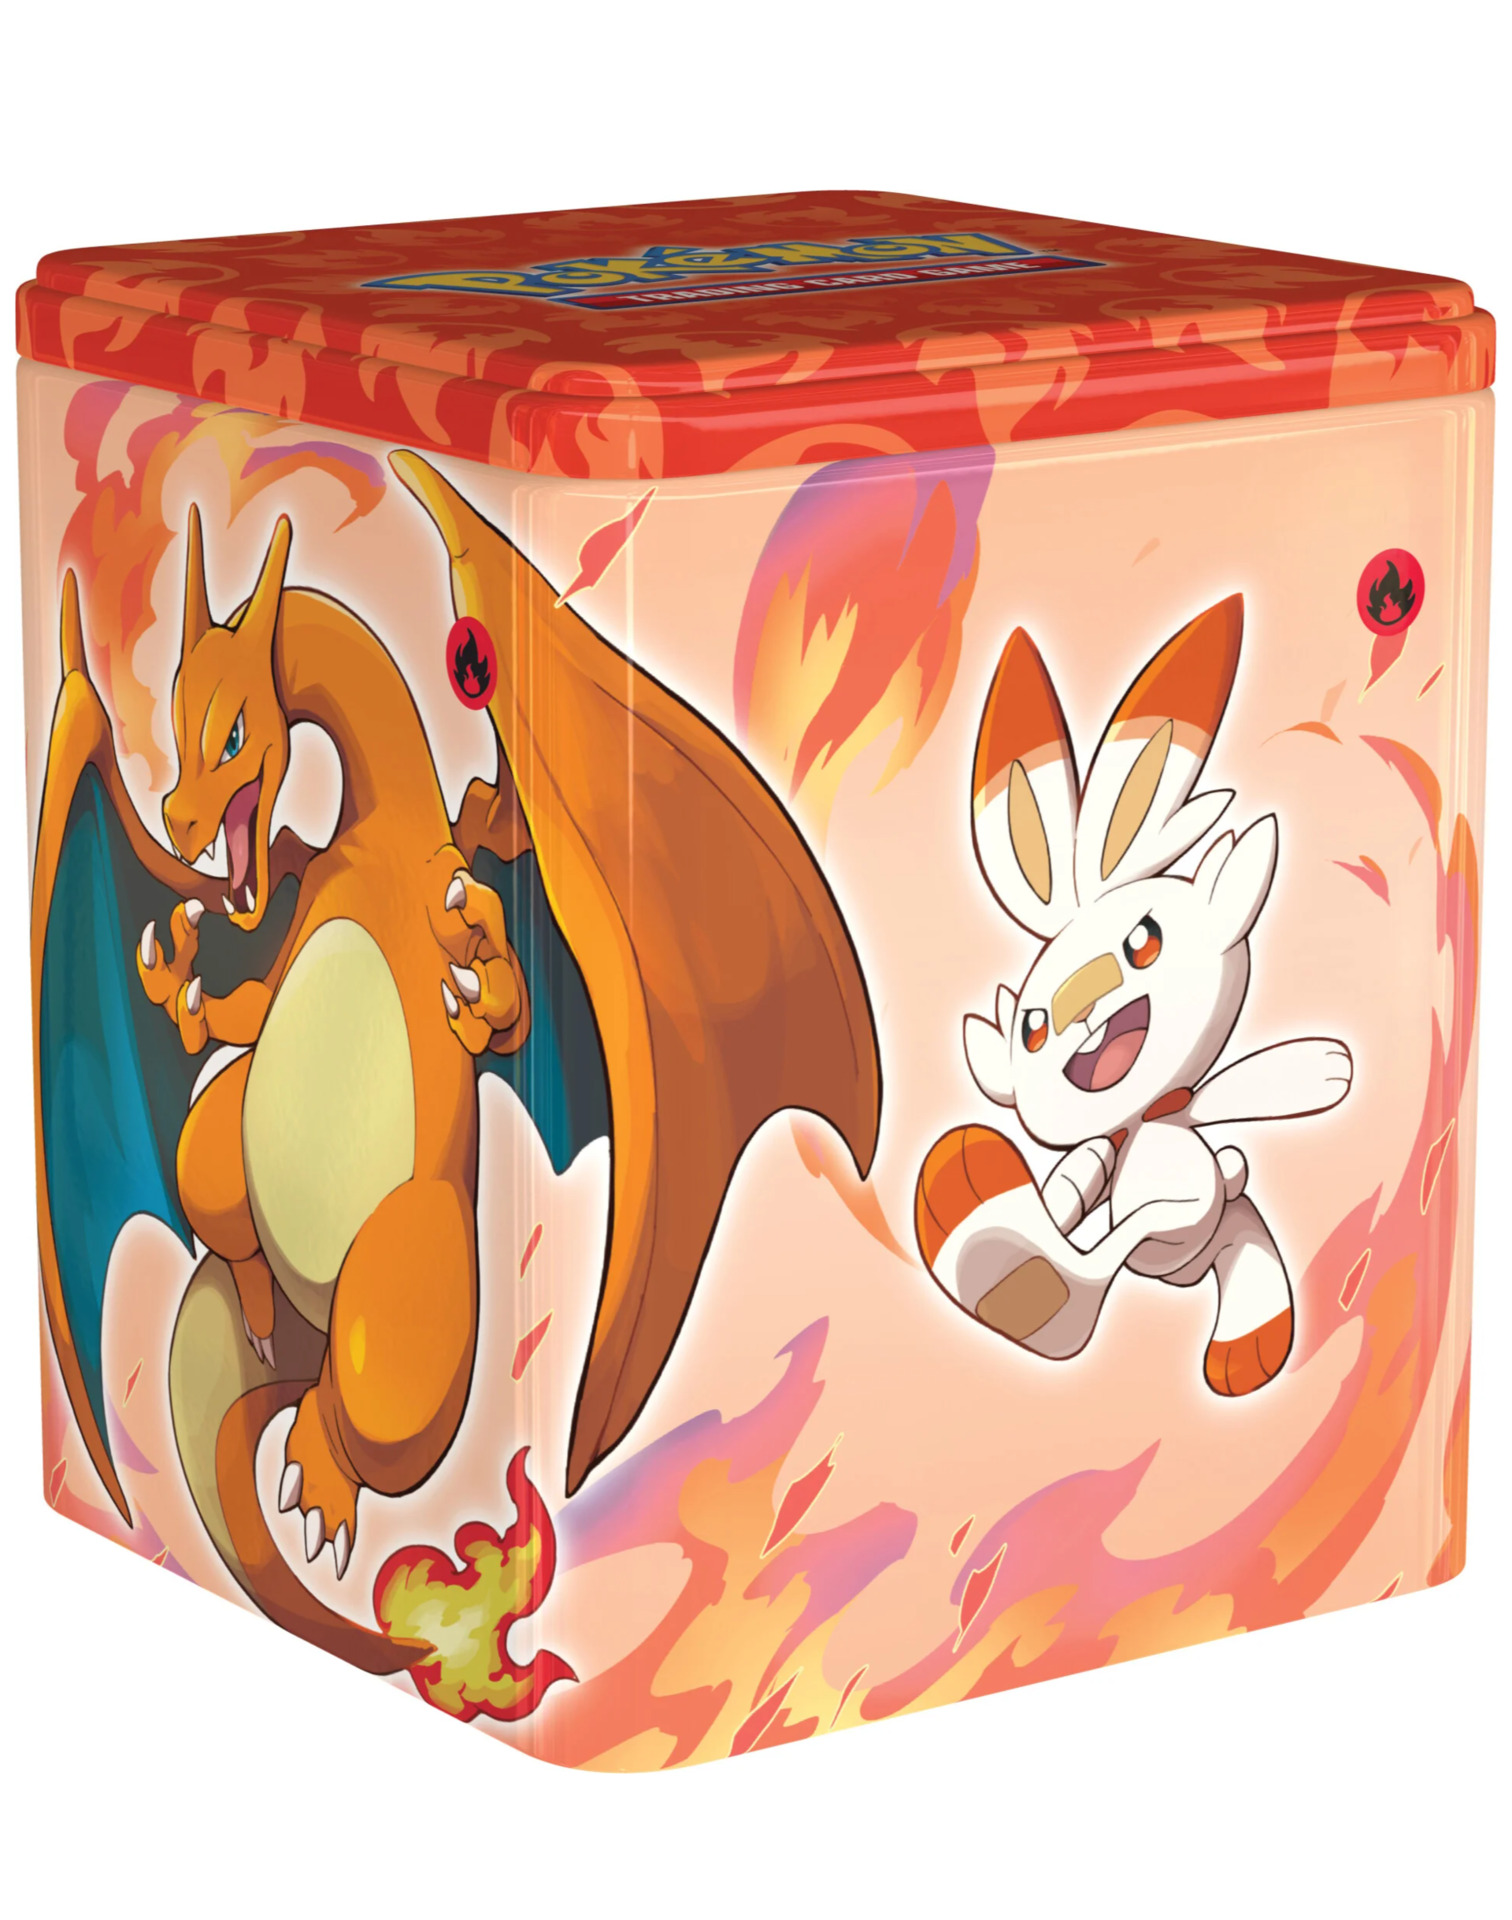 Kartová hra Pokémon TCG - Fire Type Stacking Tin